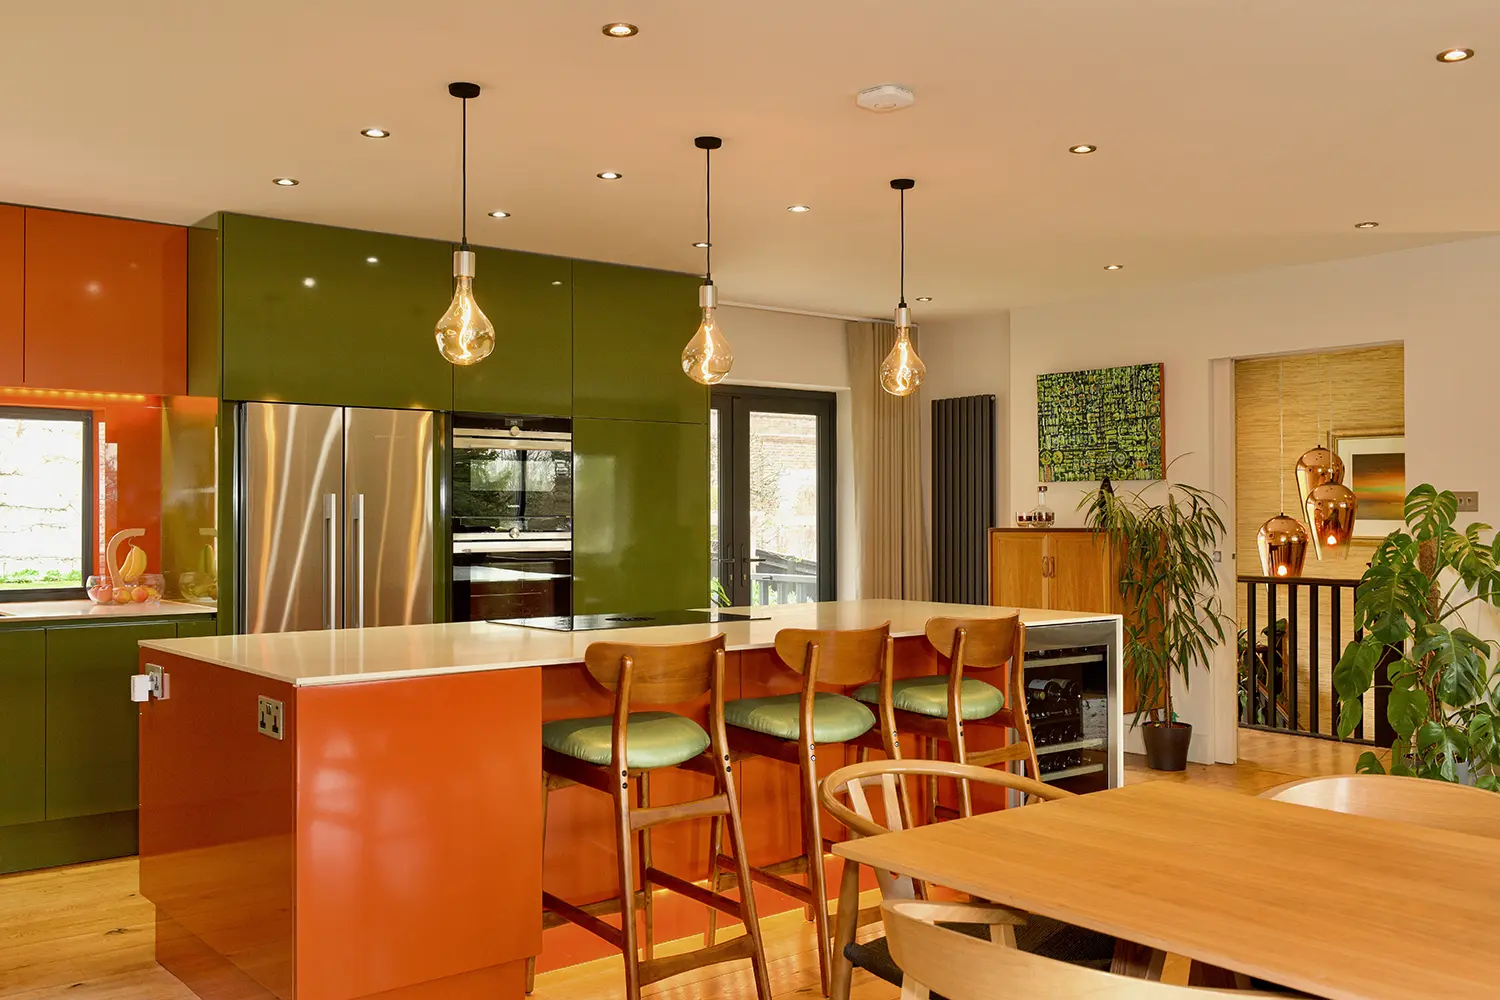 Mid-Century Modern home kitchen interior design